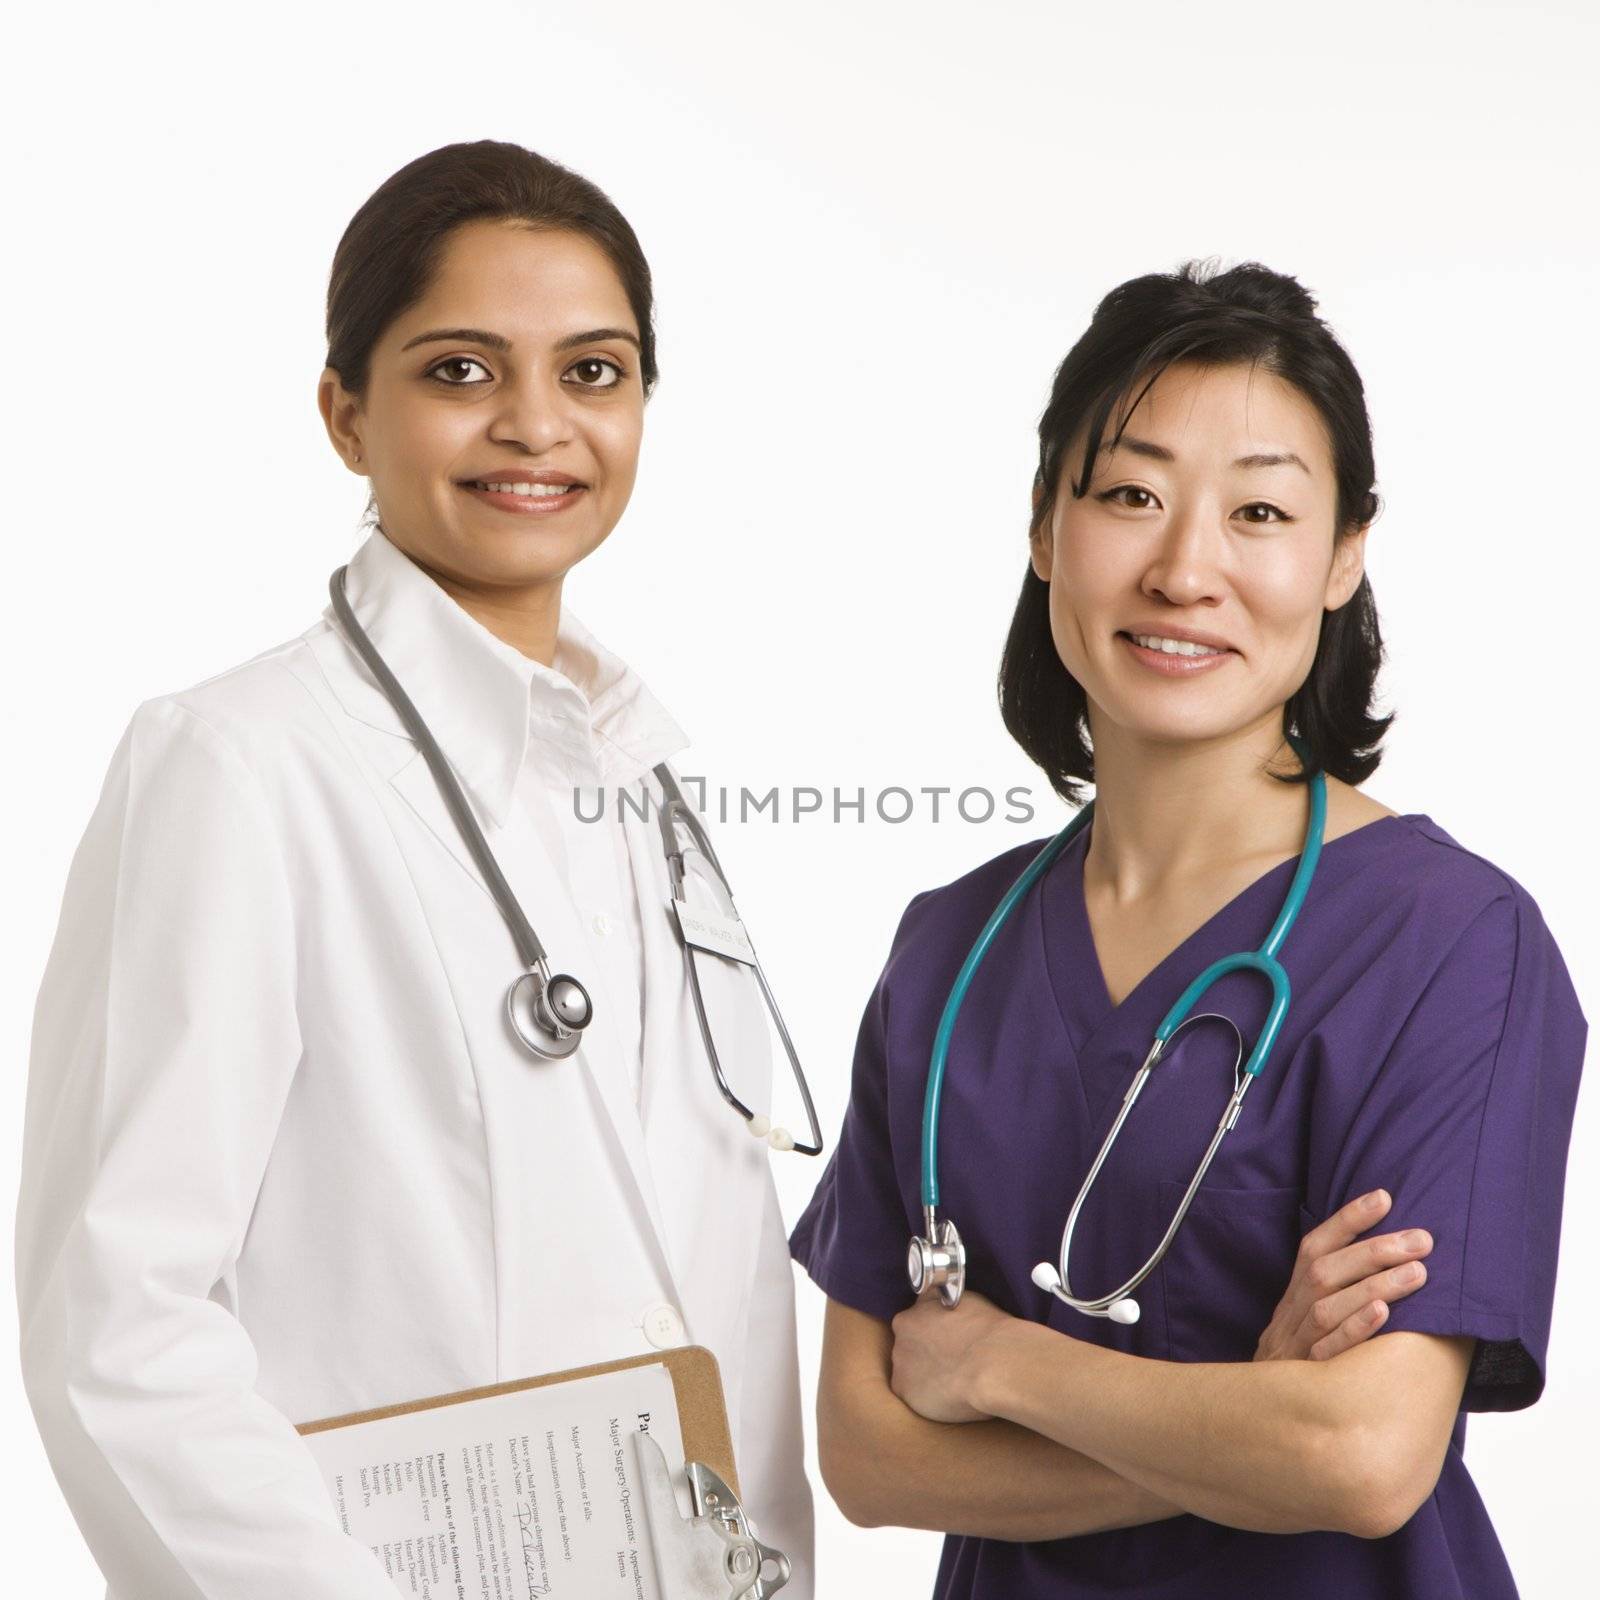 Women doctors. by iofoto